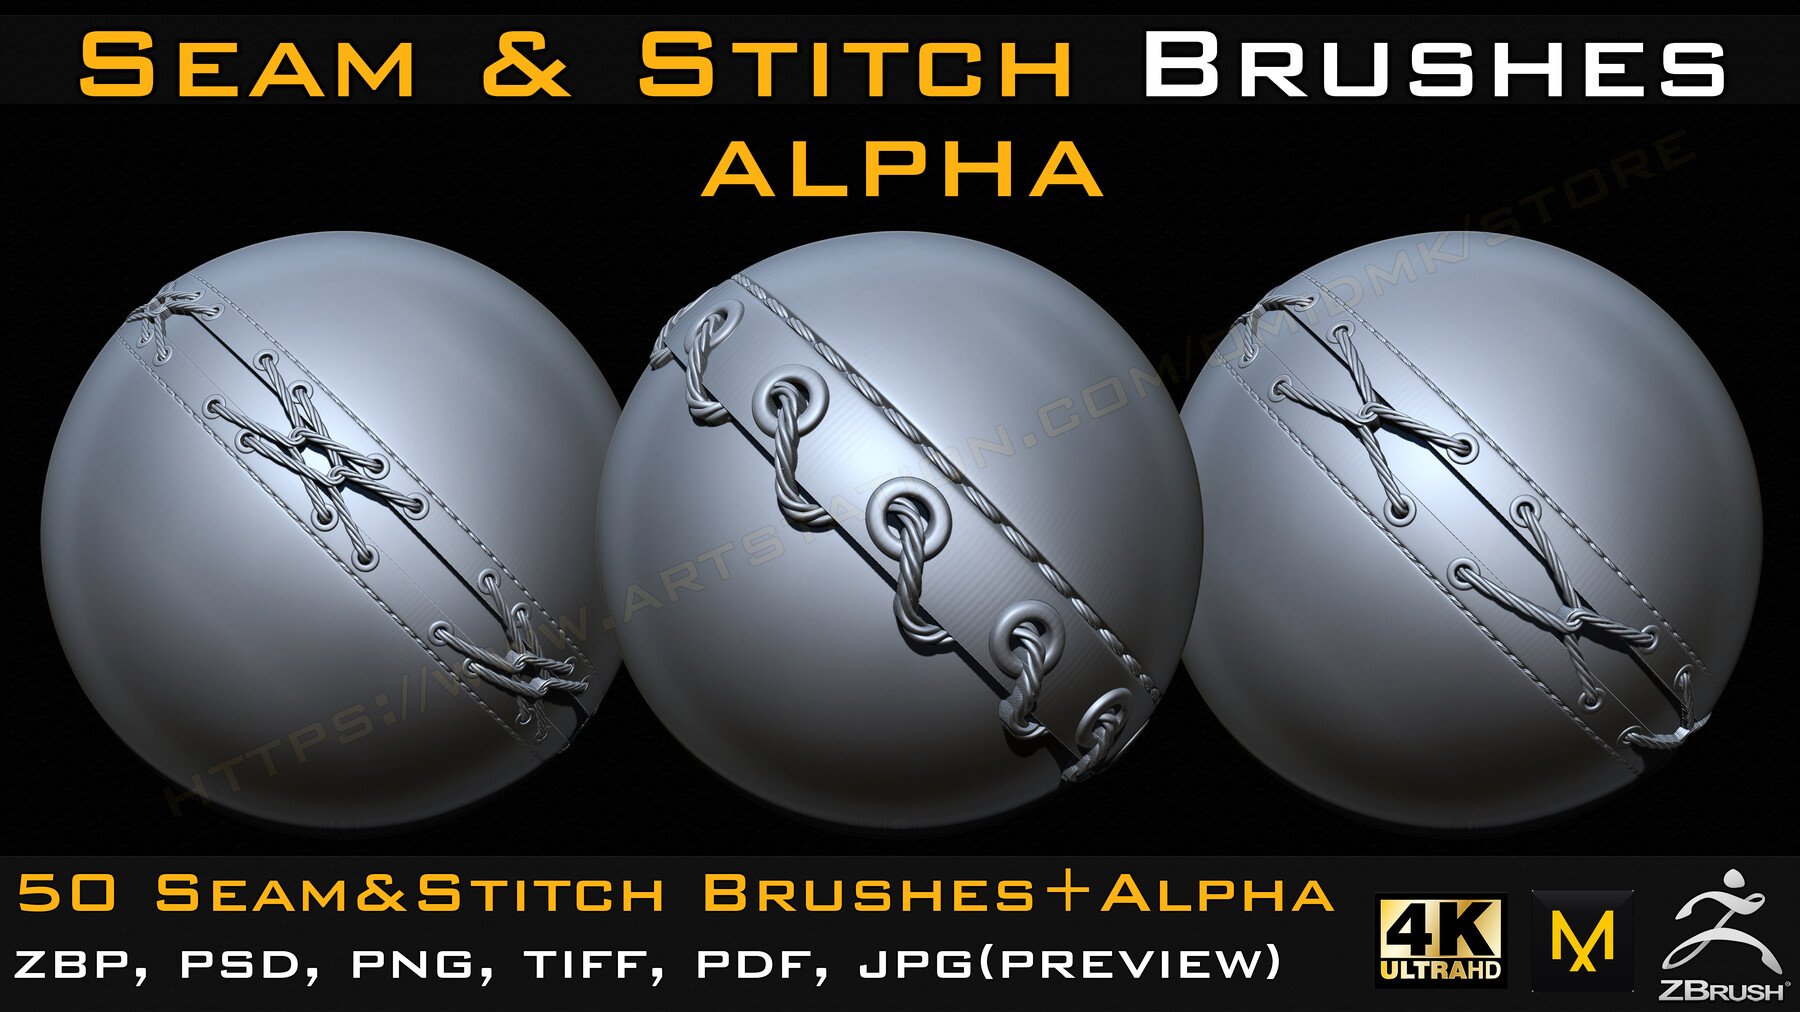 50 Seam & Stitch Brushes + Alpha Vol.4